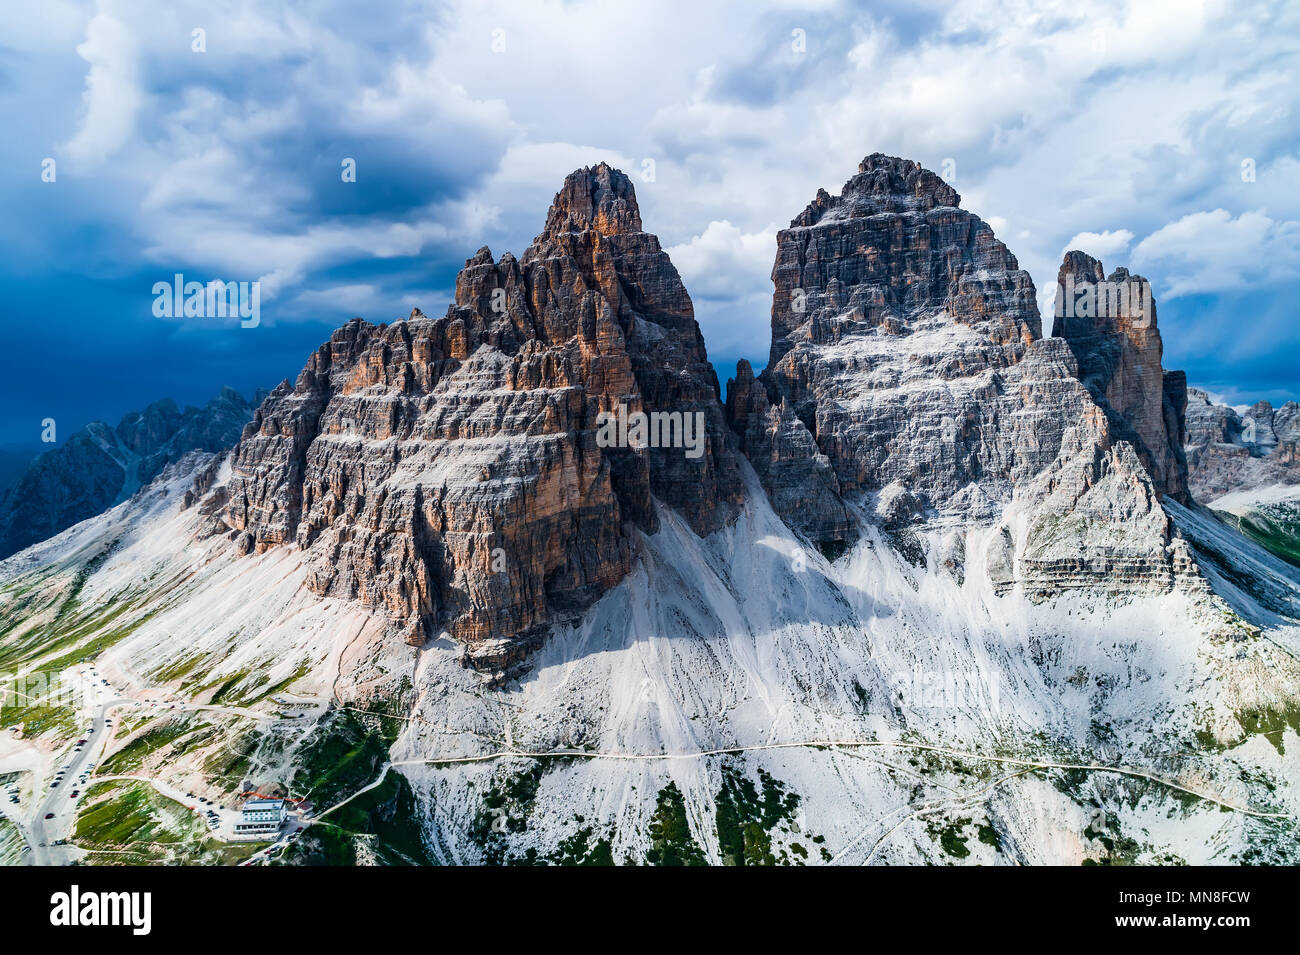 Nationalpark Drei Zinnen in den Dolomiten Alpen. Schönen natur von Italien. Stockfoto